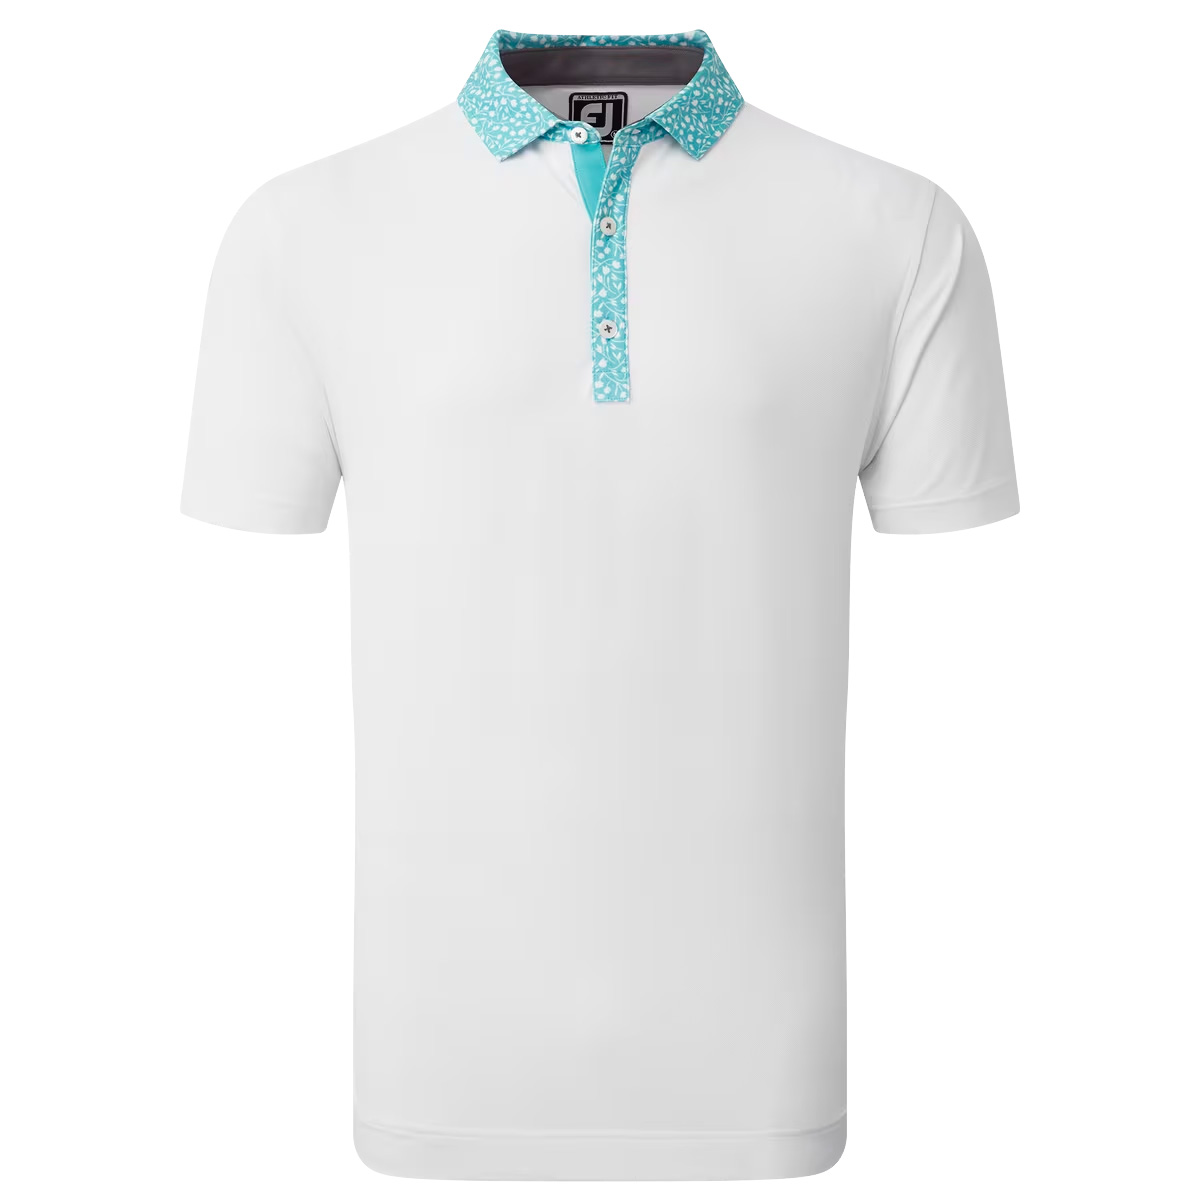 FootJoy Tossed Tulip Trim Pique Mens Golf Polo Shirt  - White/Maui Blue